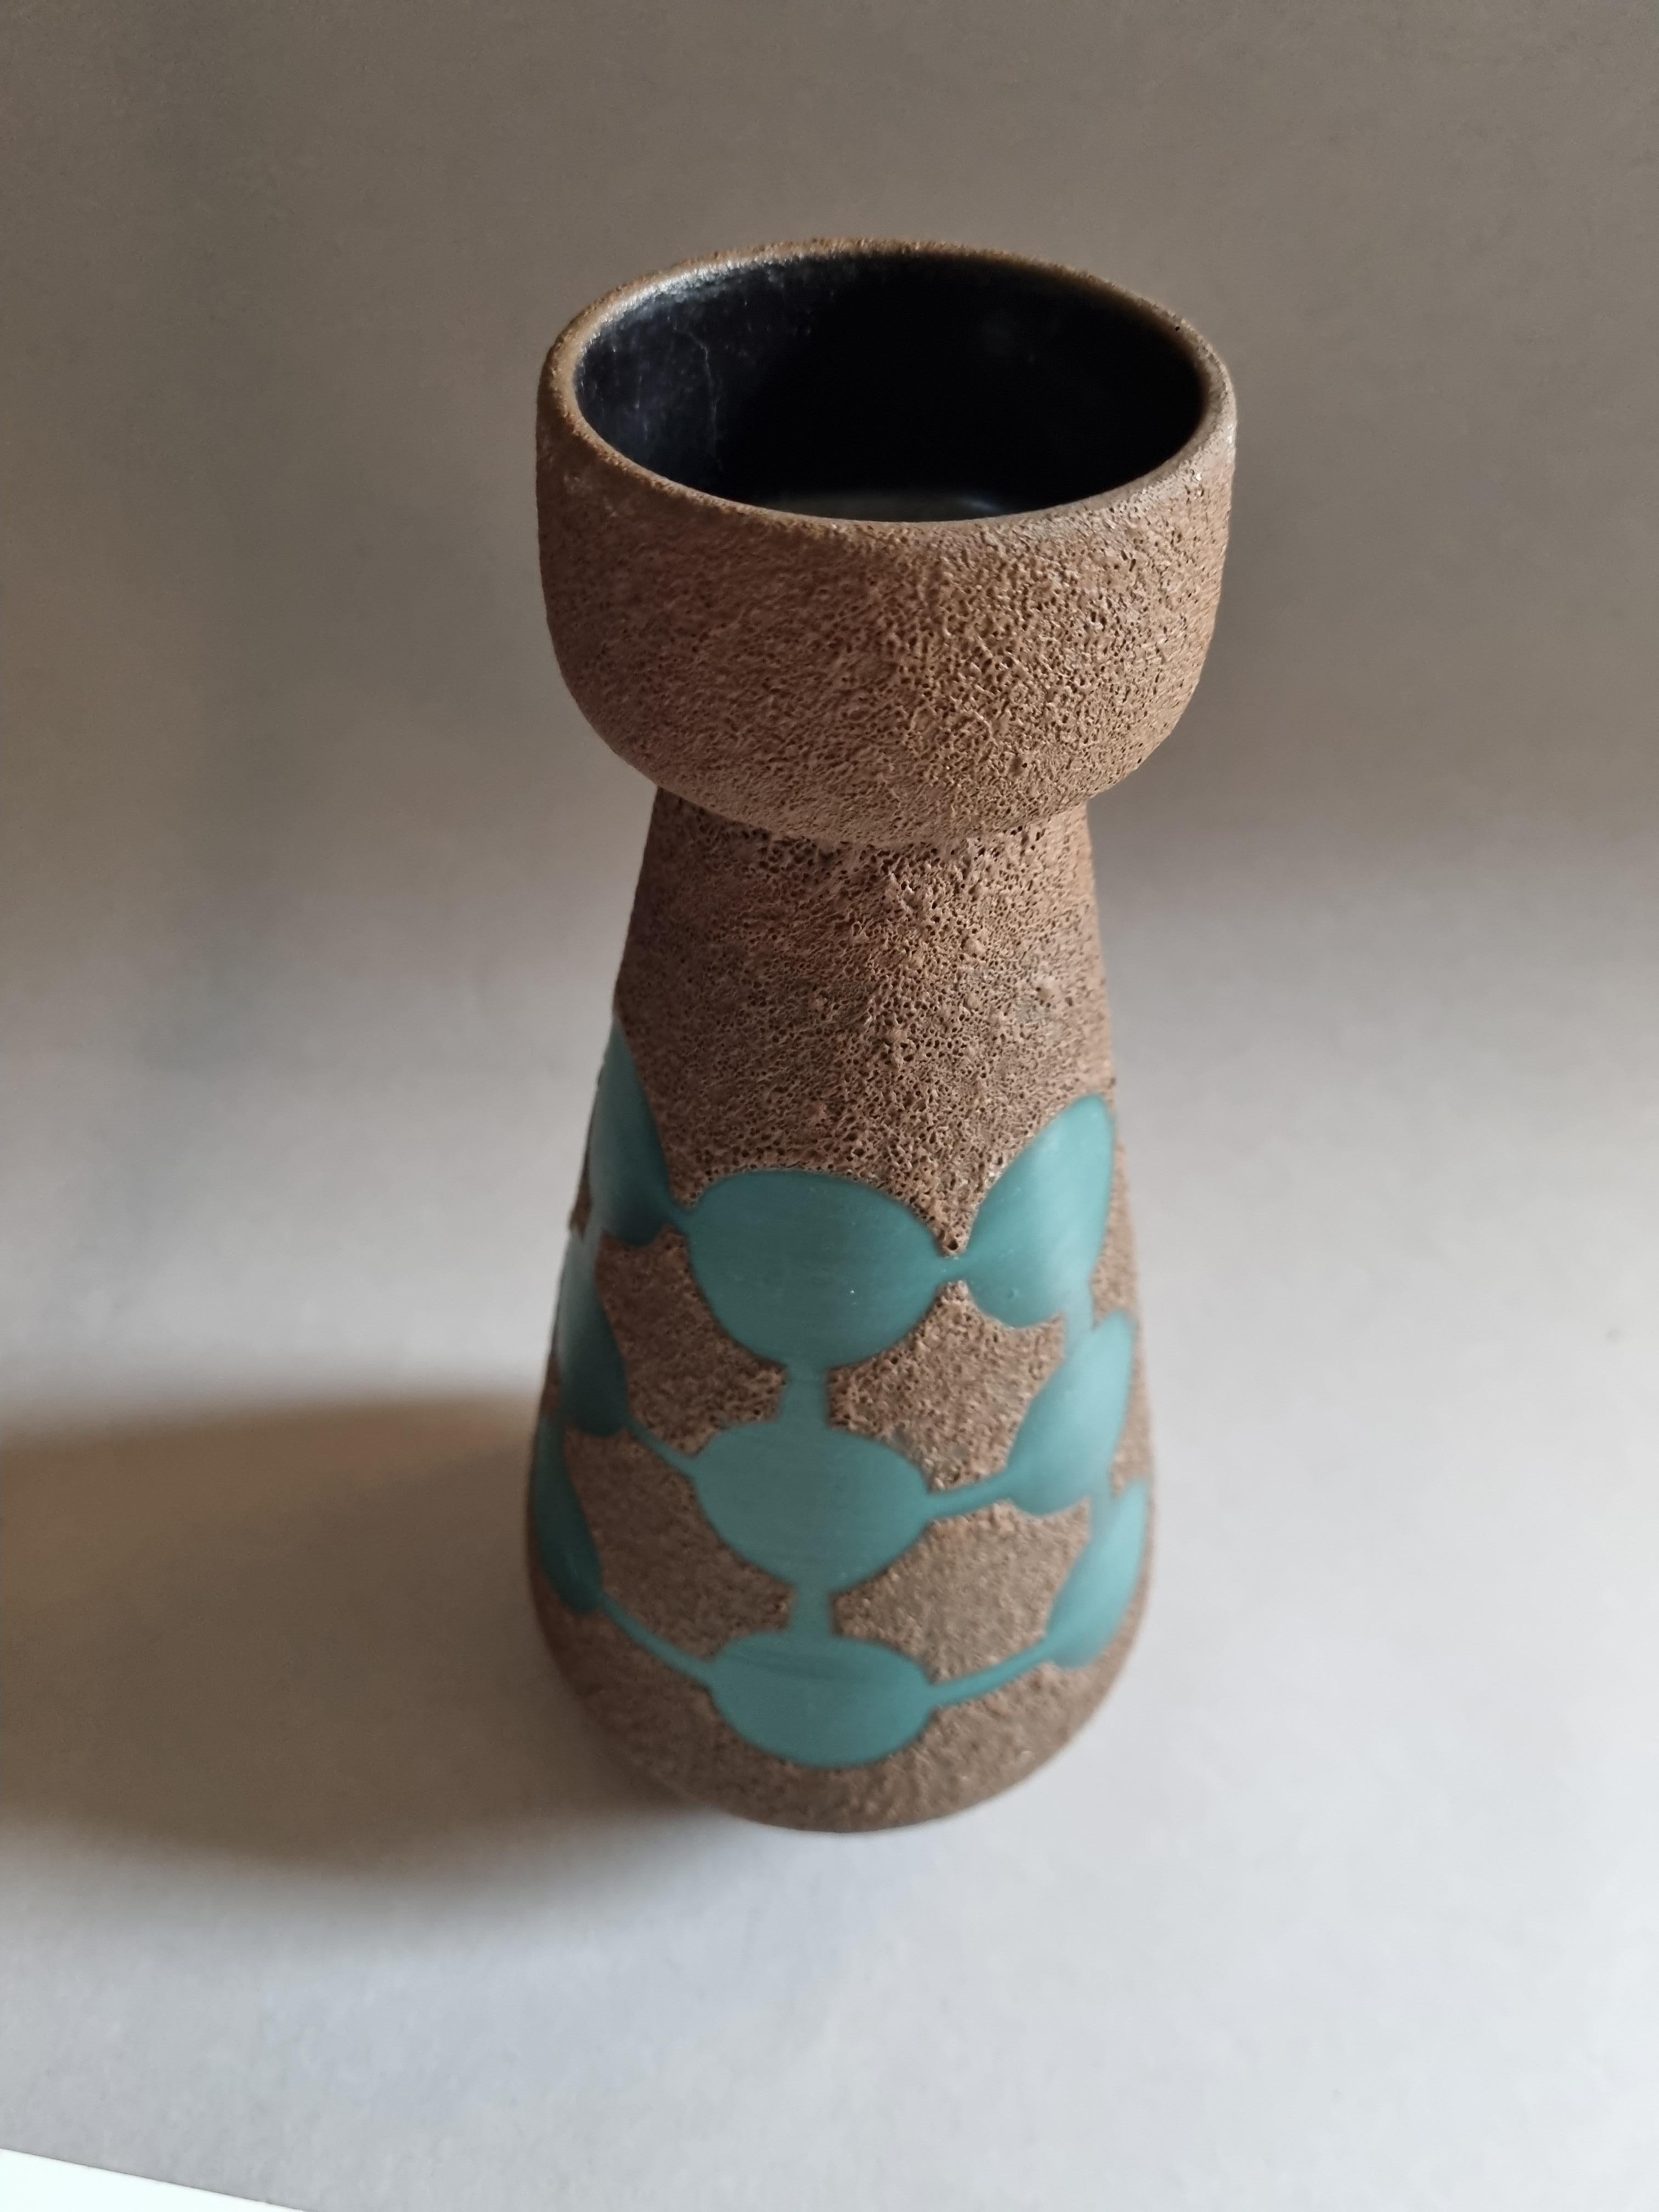 Diese Vase mit dem LABEL 